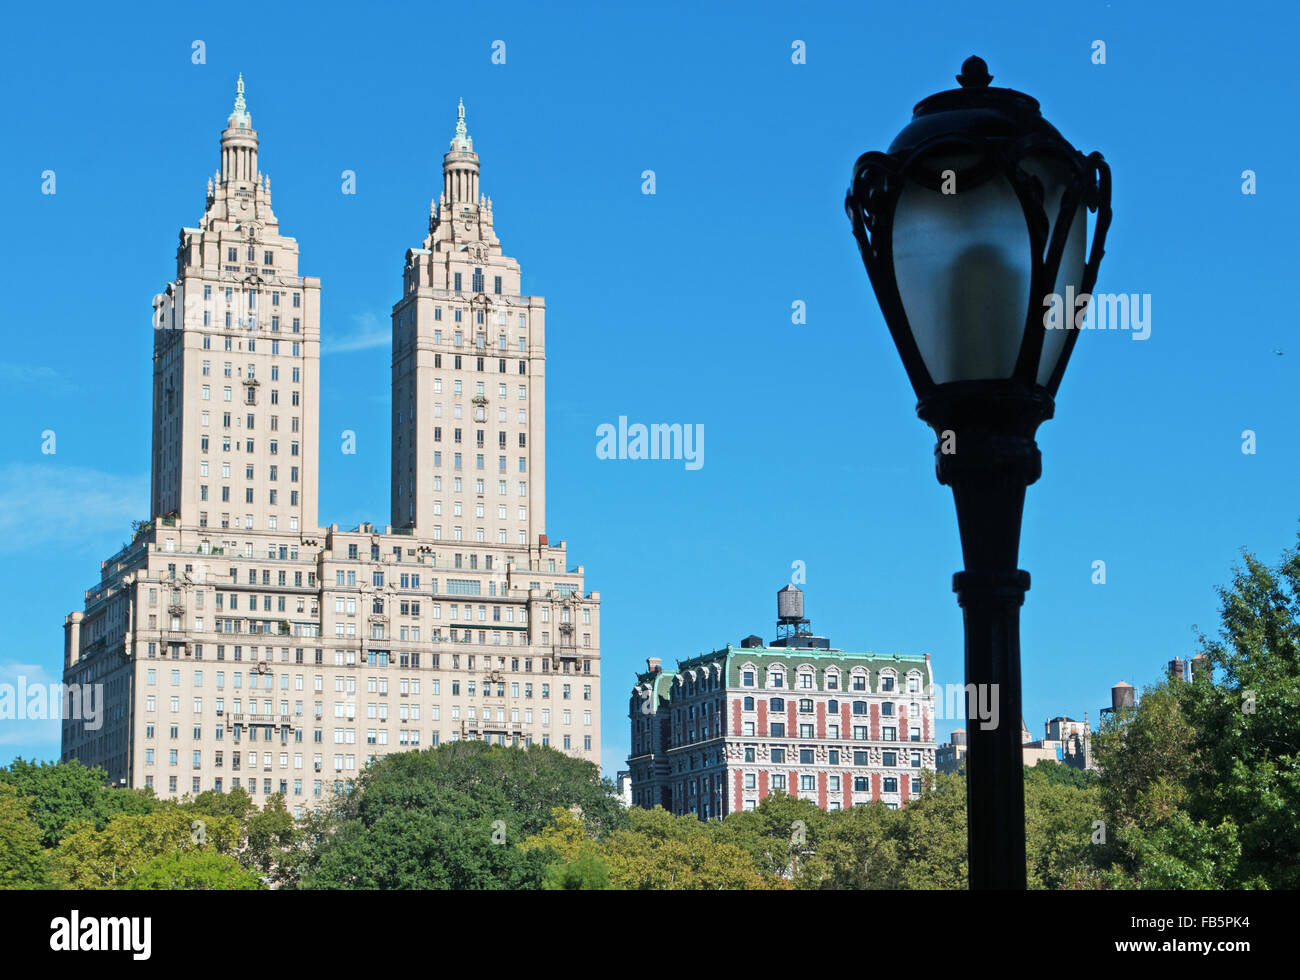 Estados Unidos de América, EE.UU.: el horizonte de Nueva York con el edificio San Remo, famoso desde 1930, visto desde Central Park Foto de stock